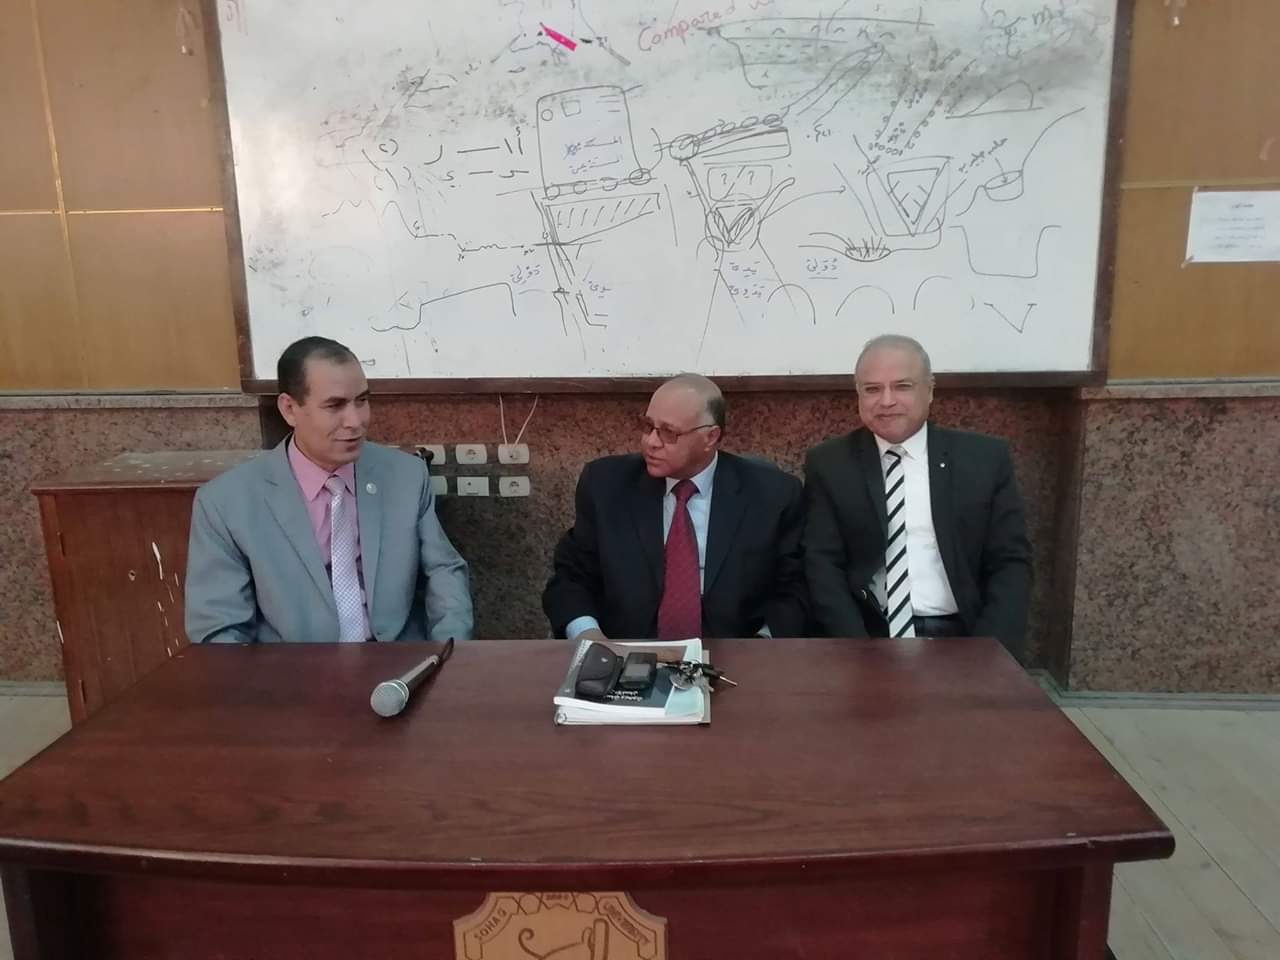 ندوة قسم الفلسفة اليوم مع الأستاذ الدكتور صابر عبد ربه والأستاذ الدكتور محمود مراد